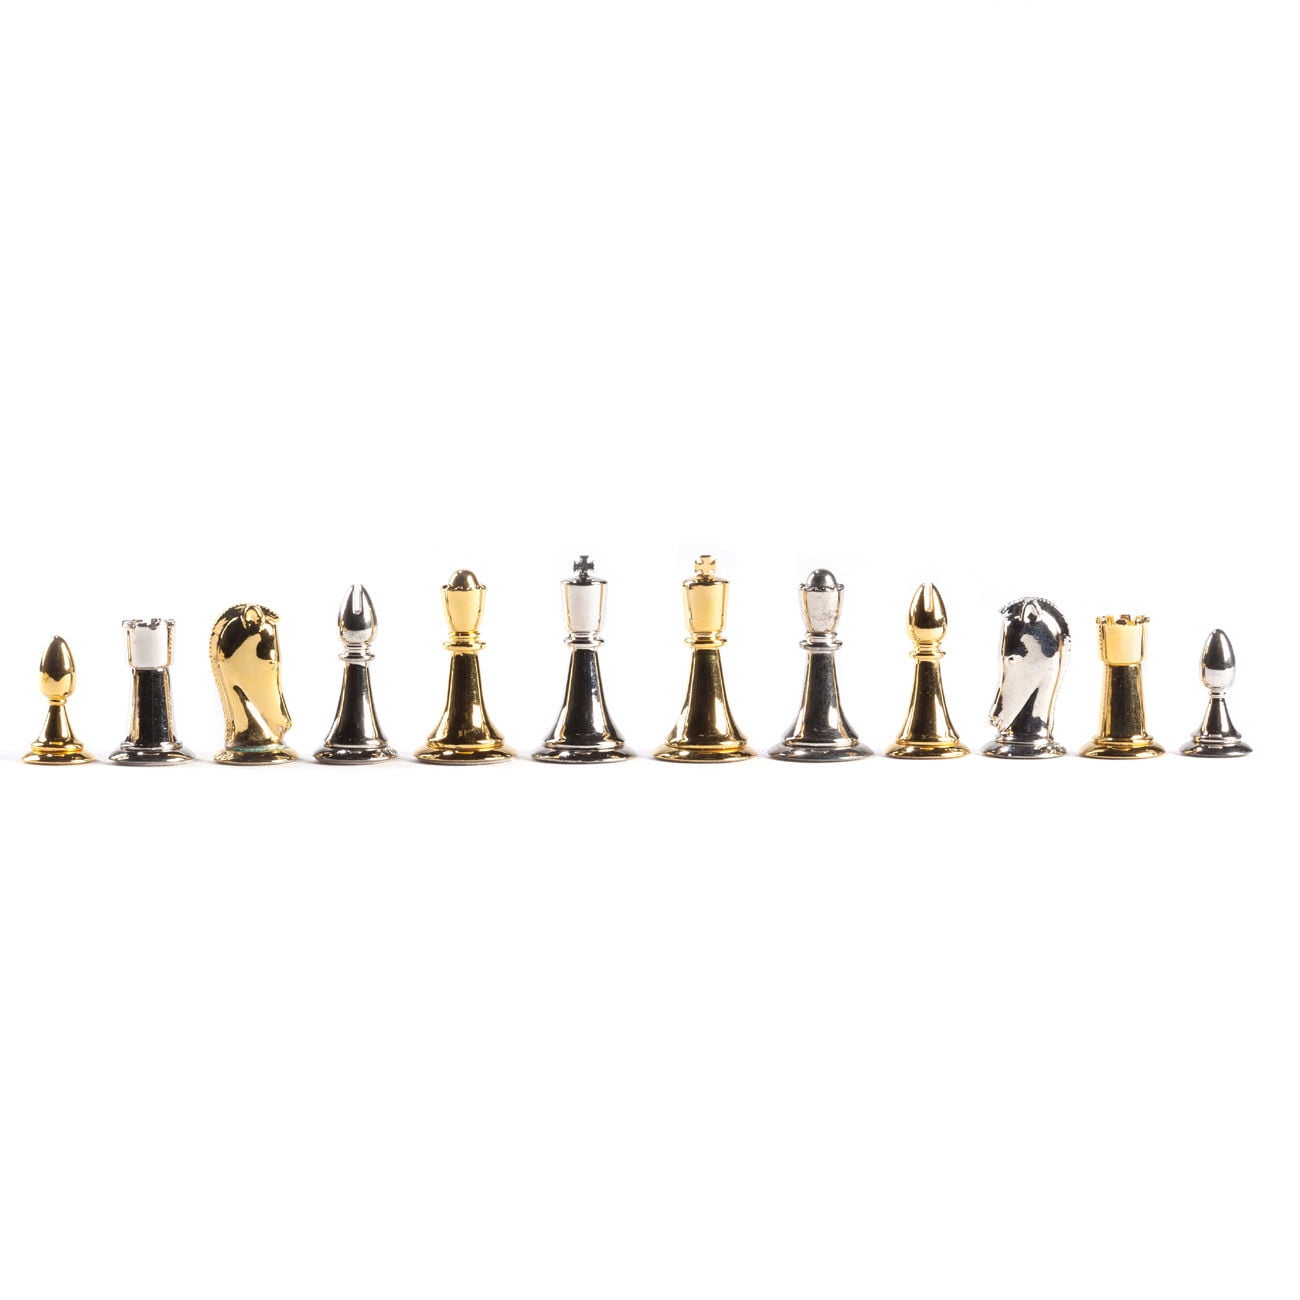 Original Star Trek Tridimensional Chess Set Franklin Mint 